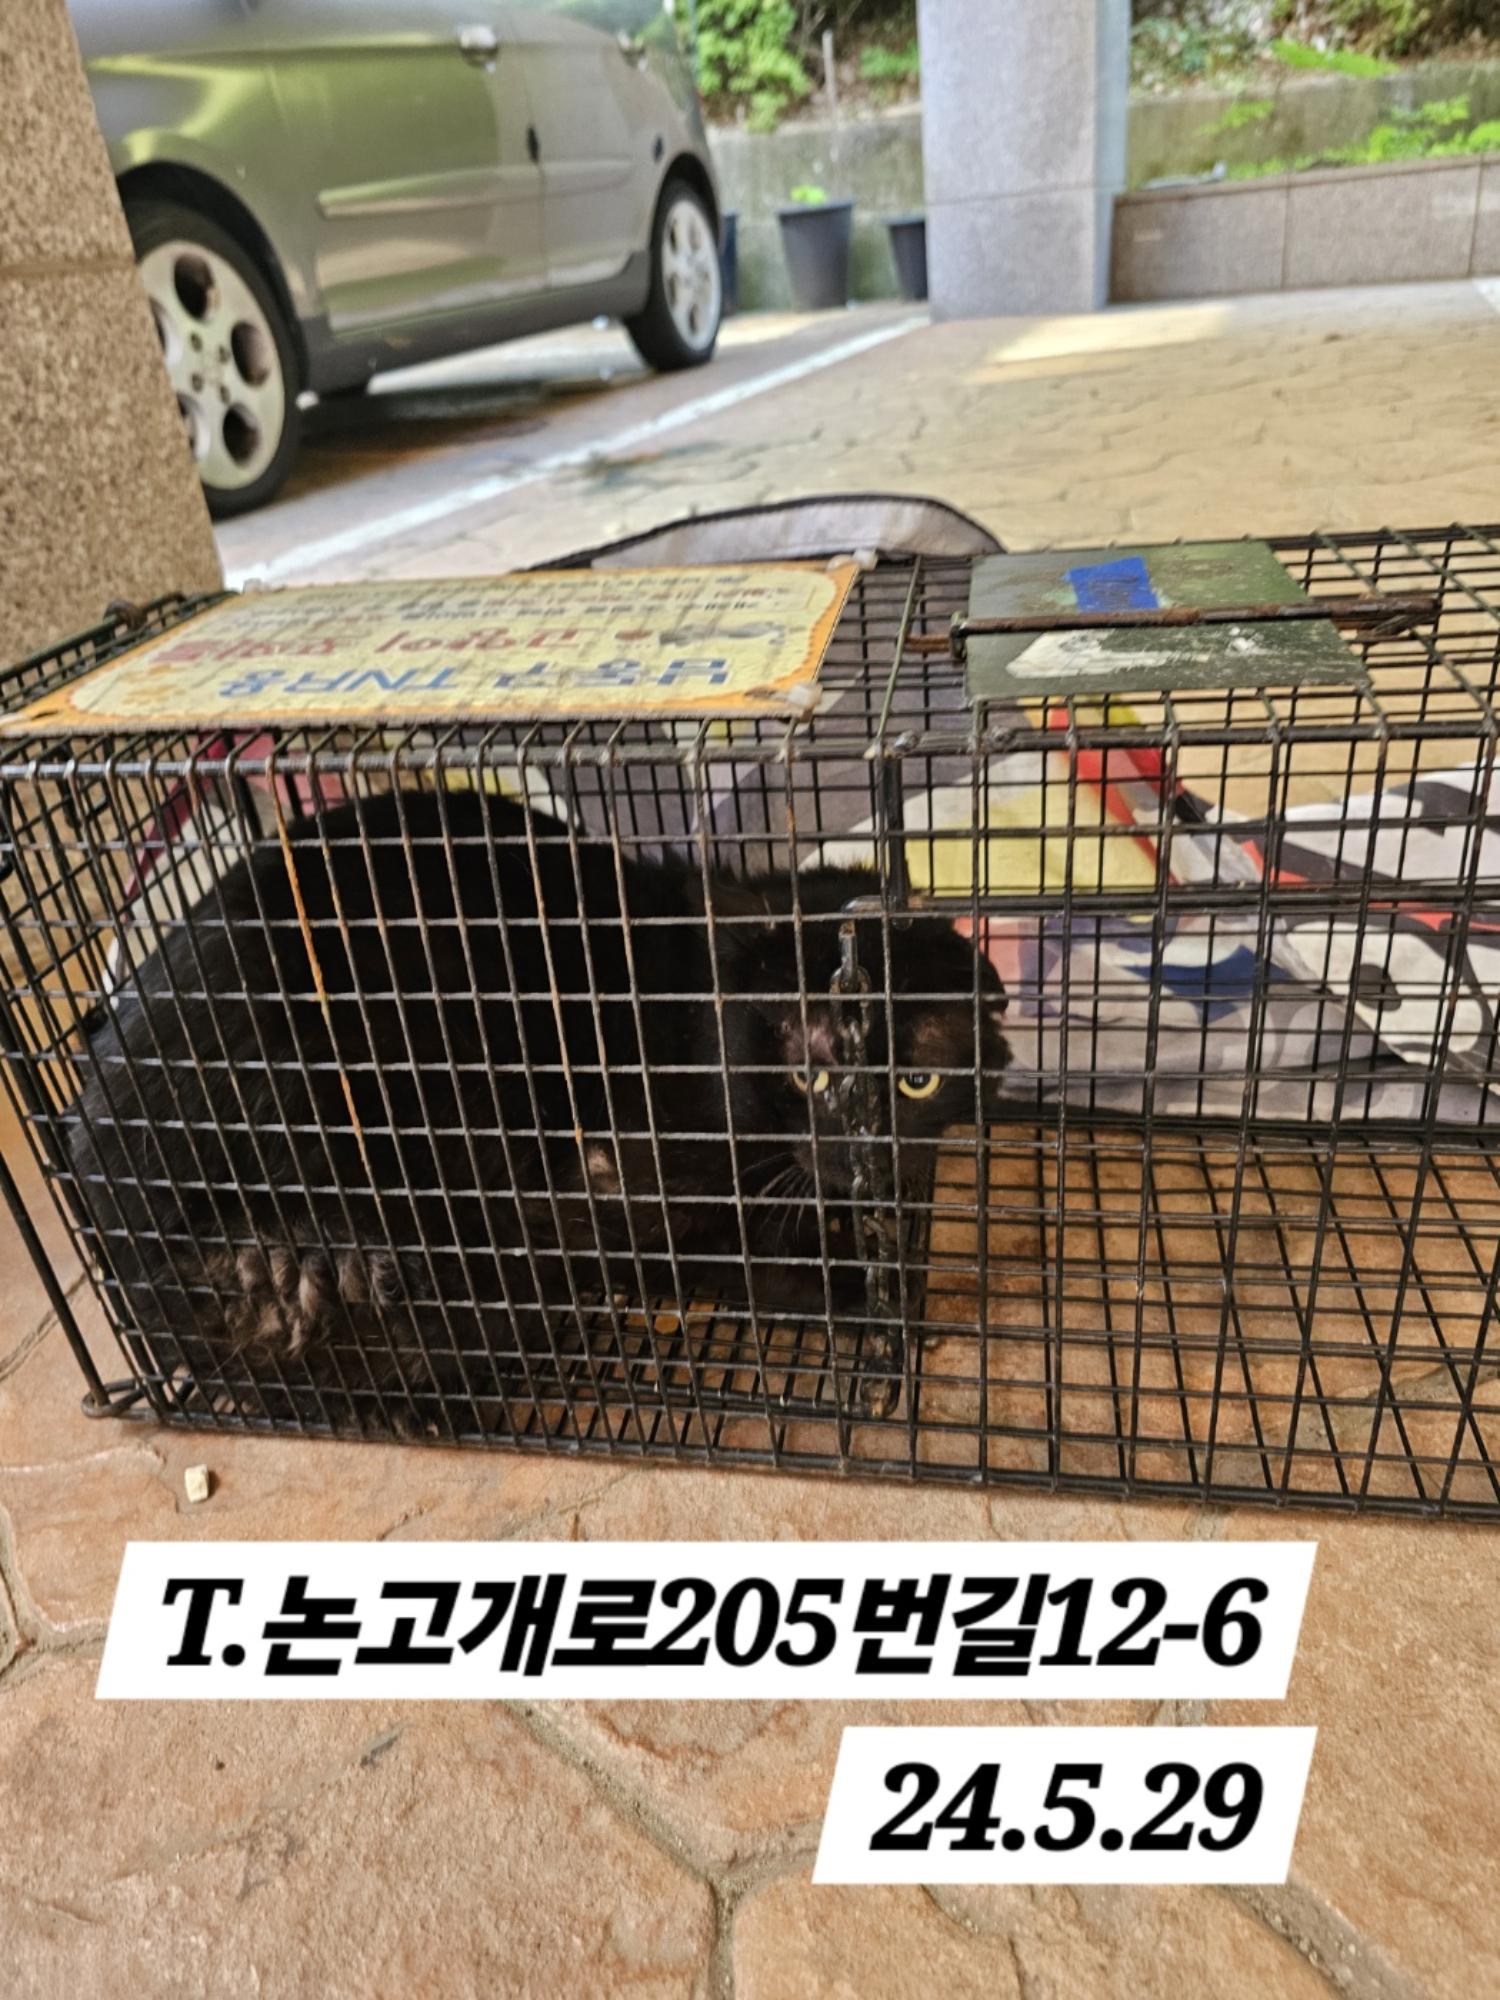 보호중동물사진 공고번호-인천-남동-2024-00330